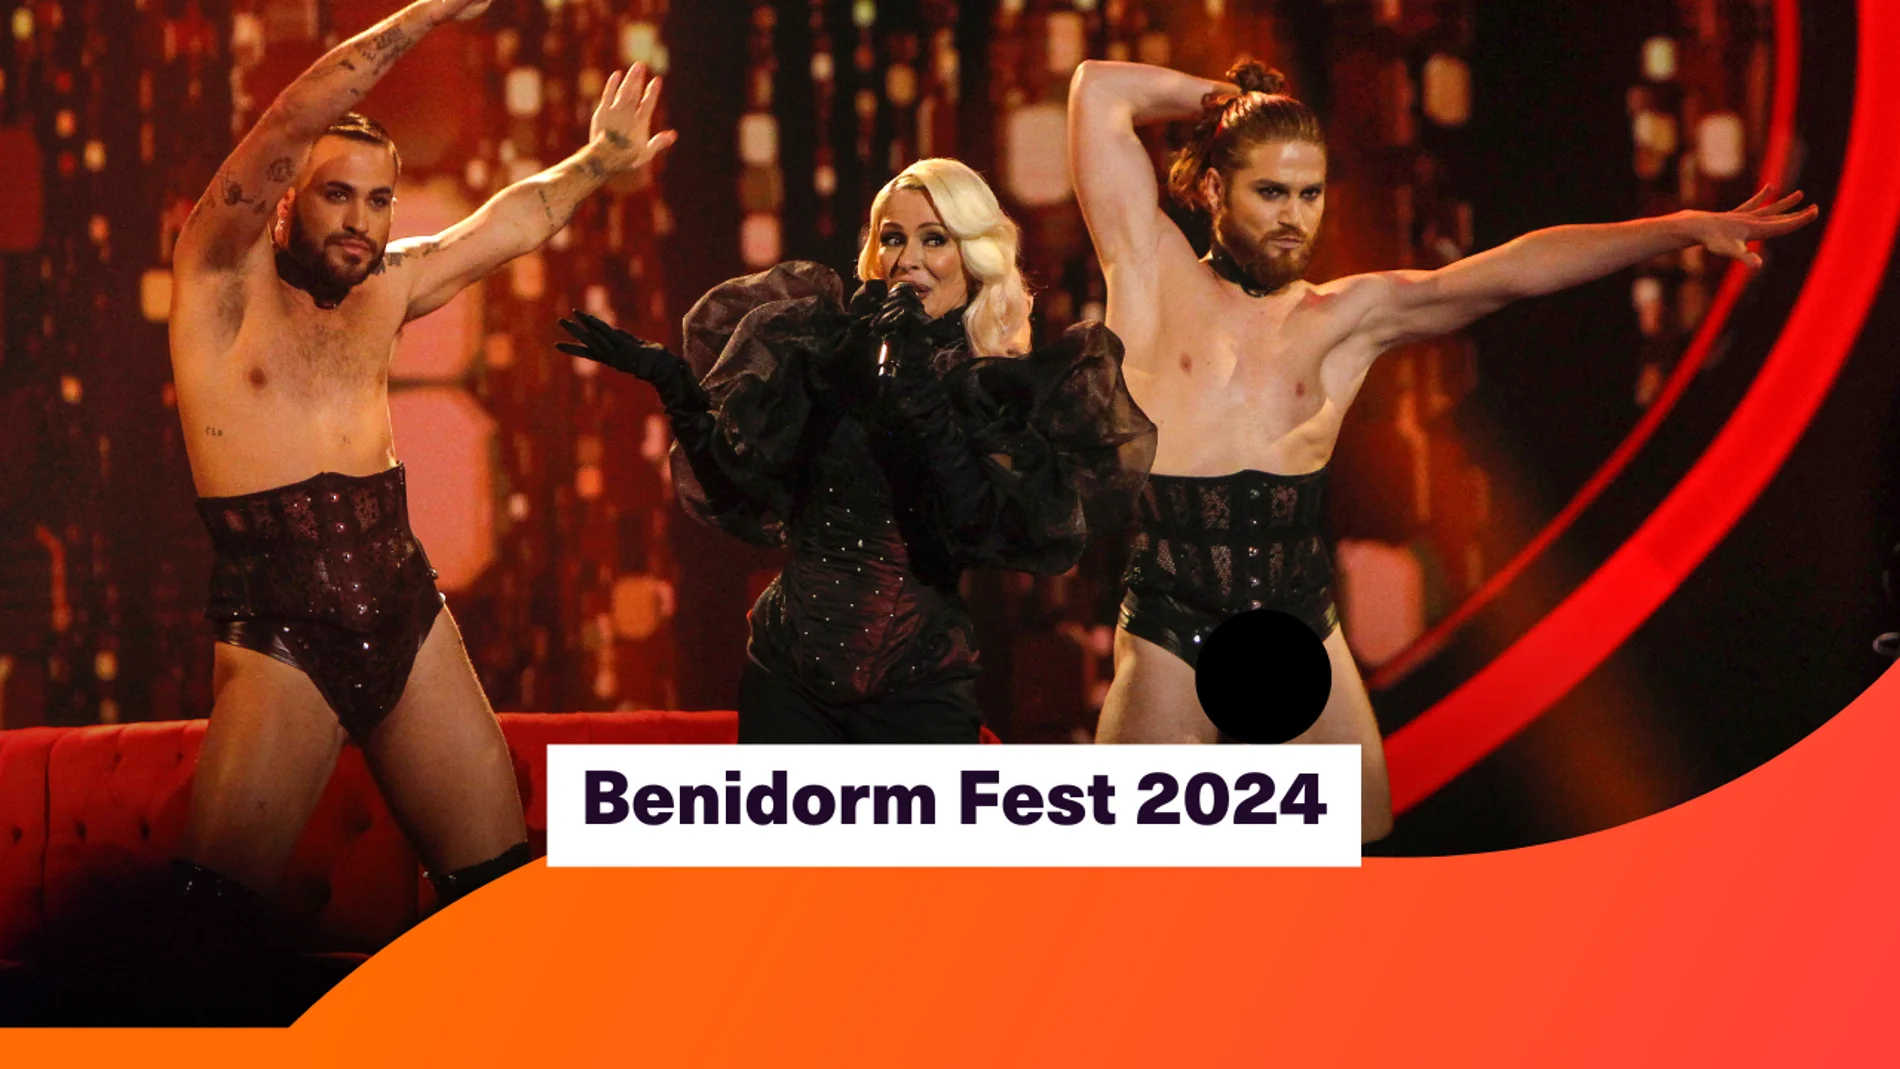 La final del Benidorm Fest 2024 en directo: Nebulossa a Eurovisión 